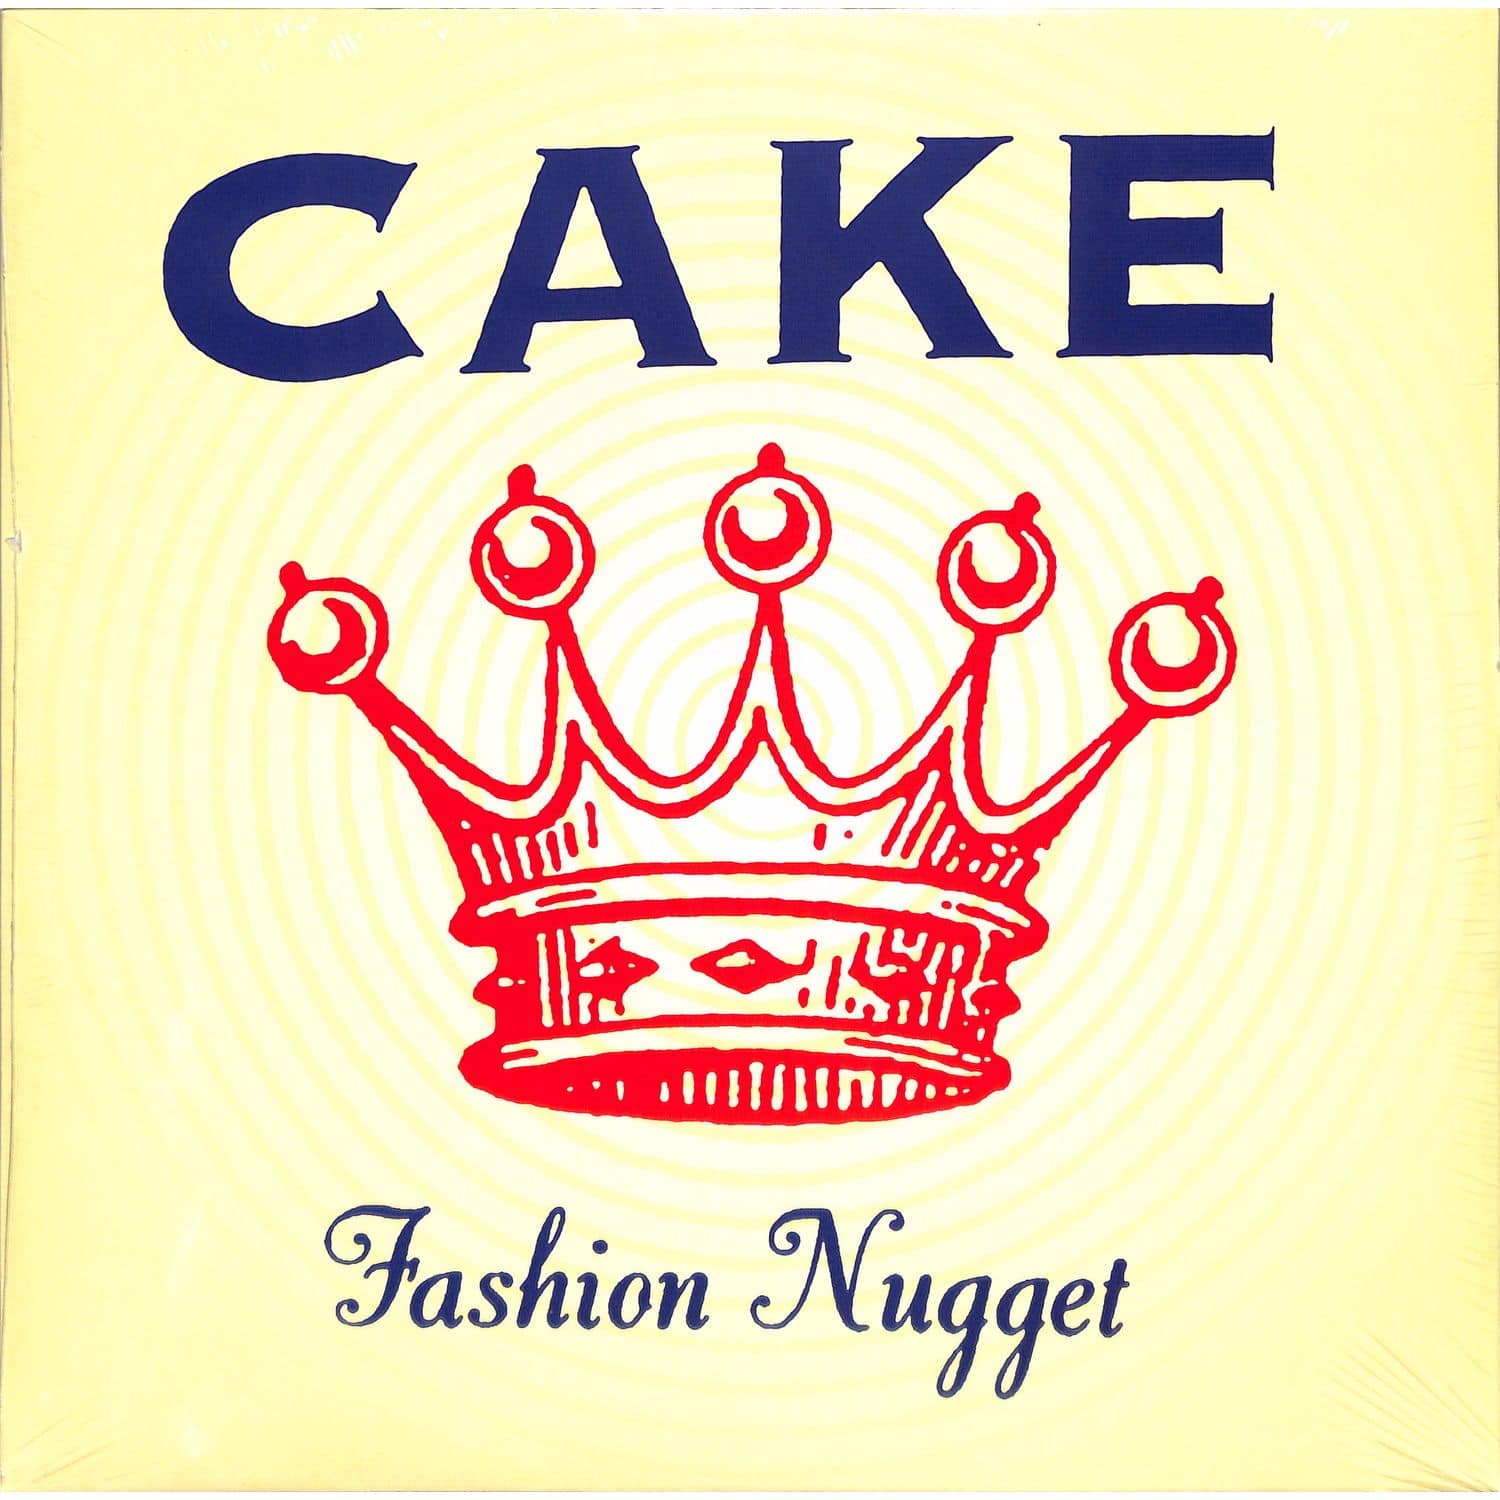 Cake - FASHION NUGGET 